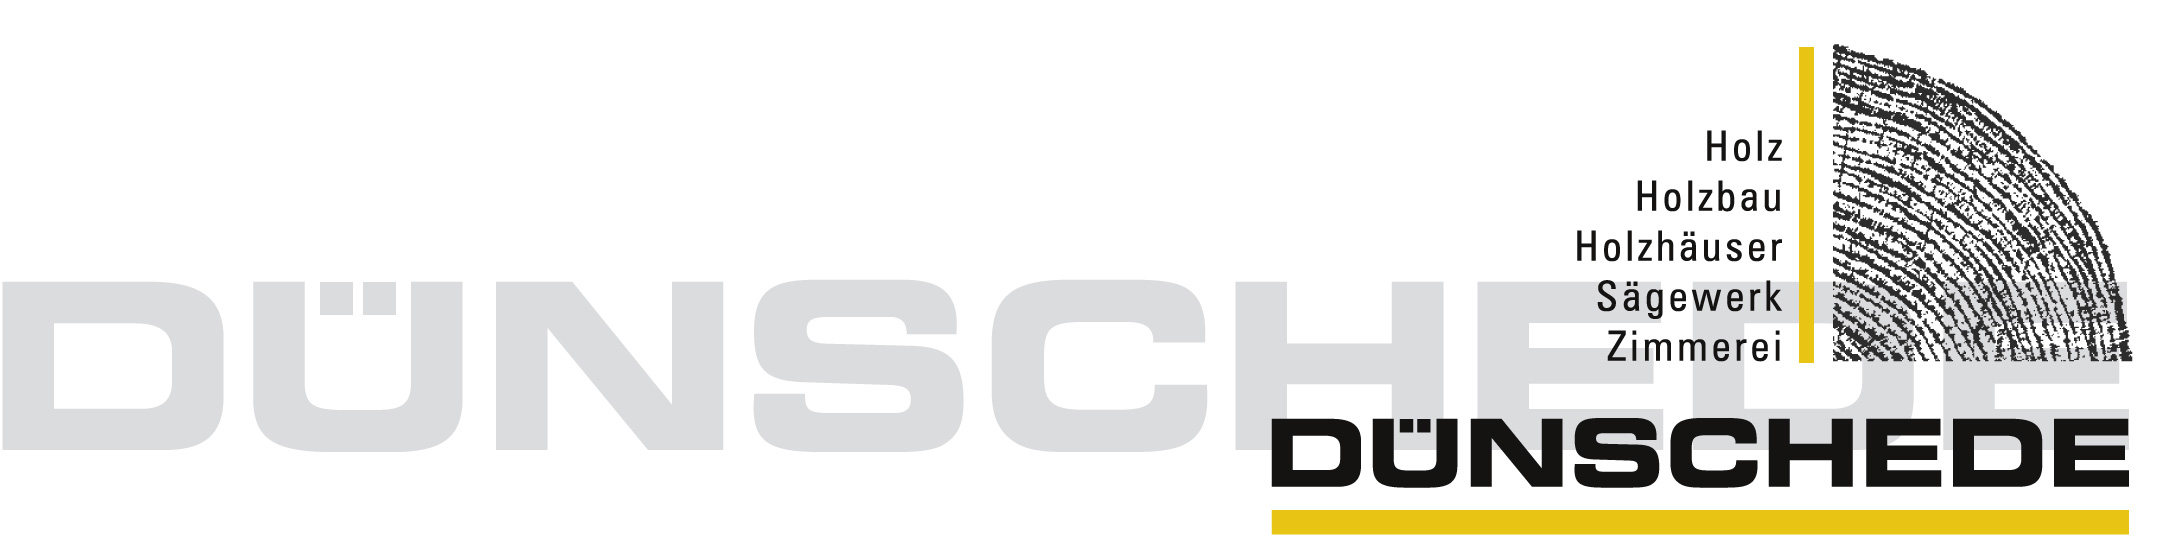 Gisbert Dnschede 2007_logo